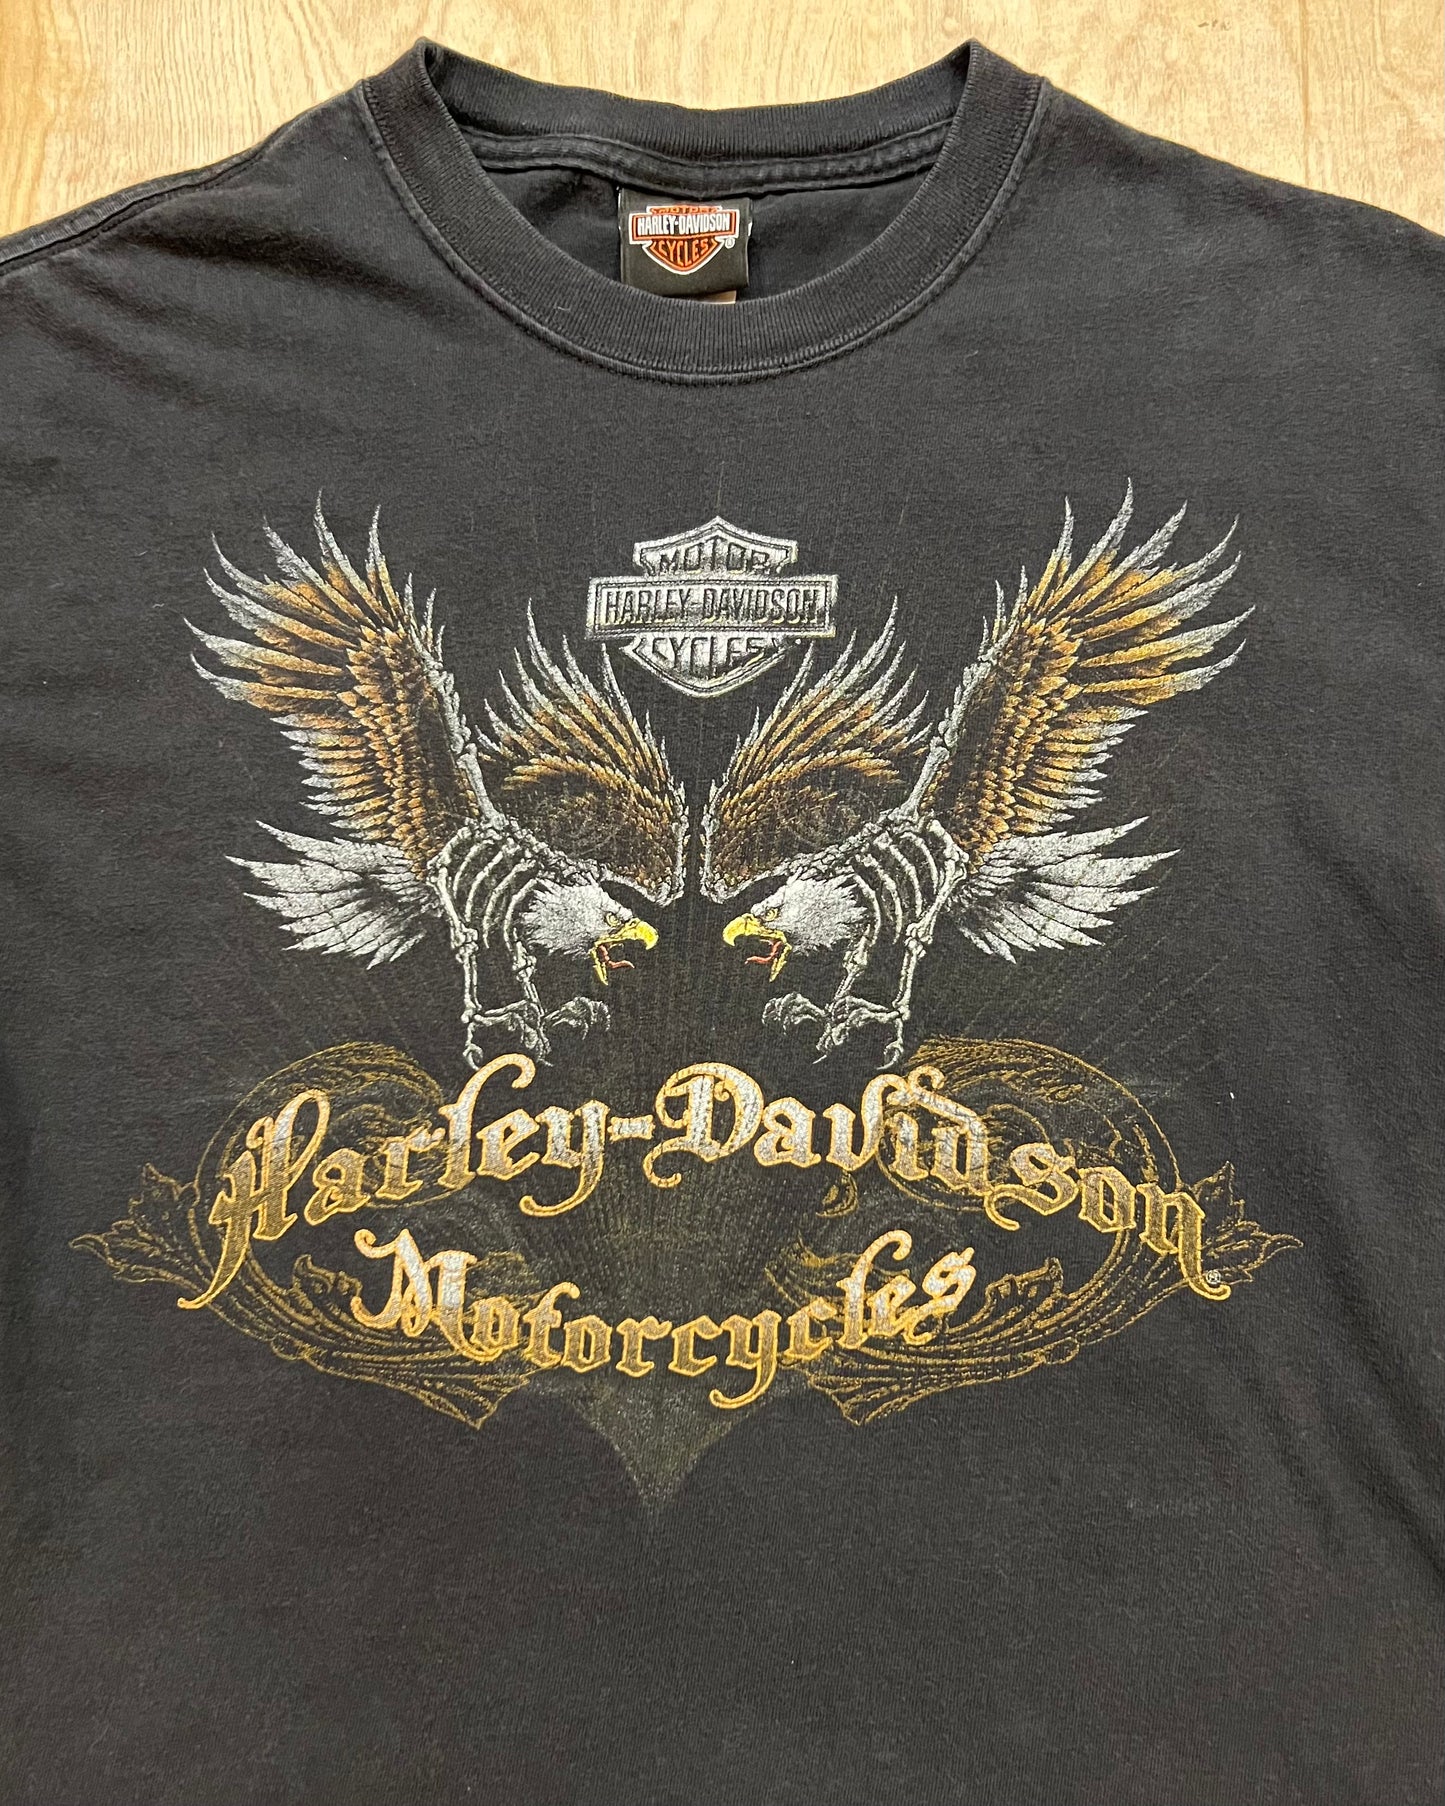 2009 Harley Davidson Kuwait T-Shirt